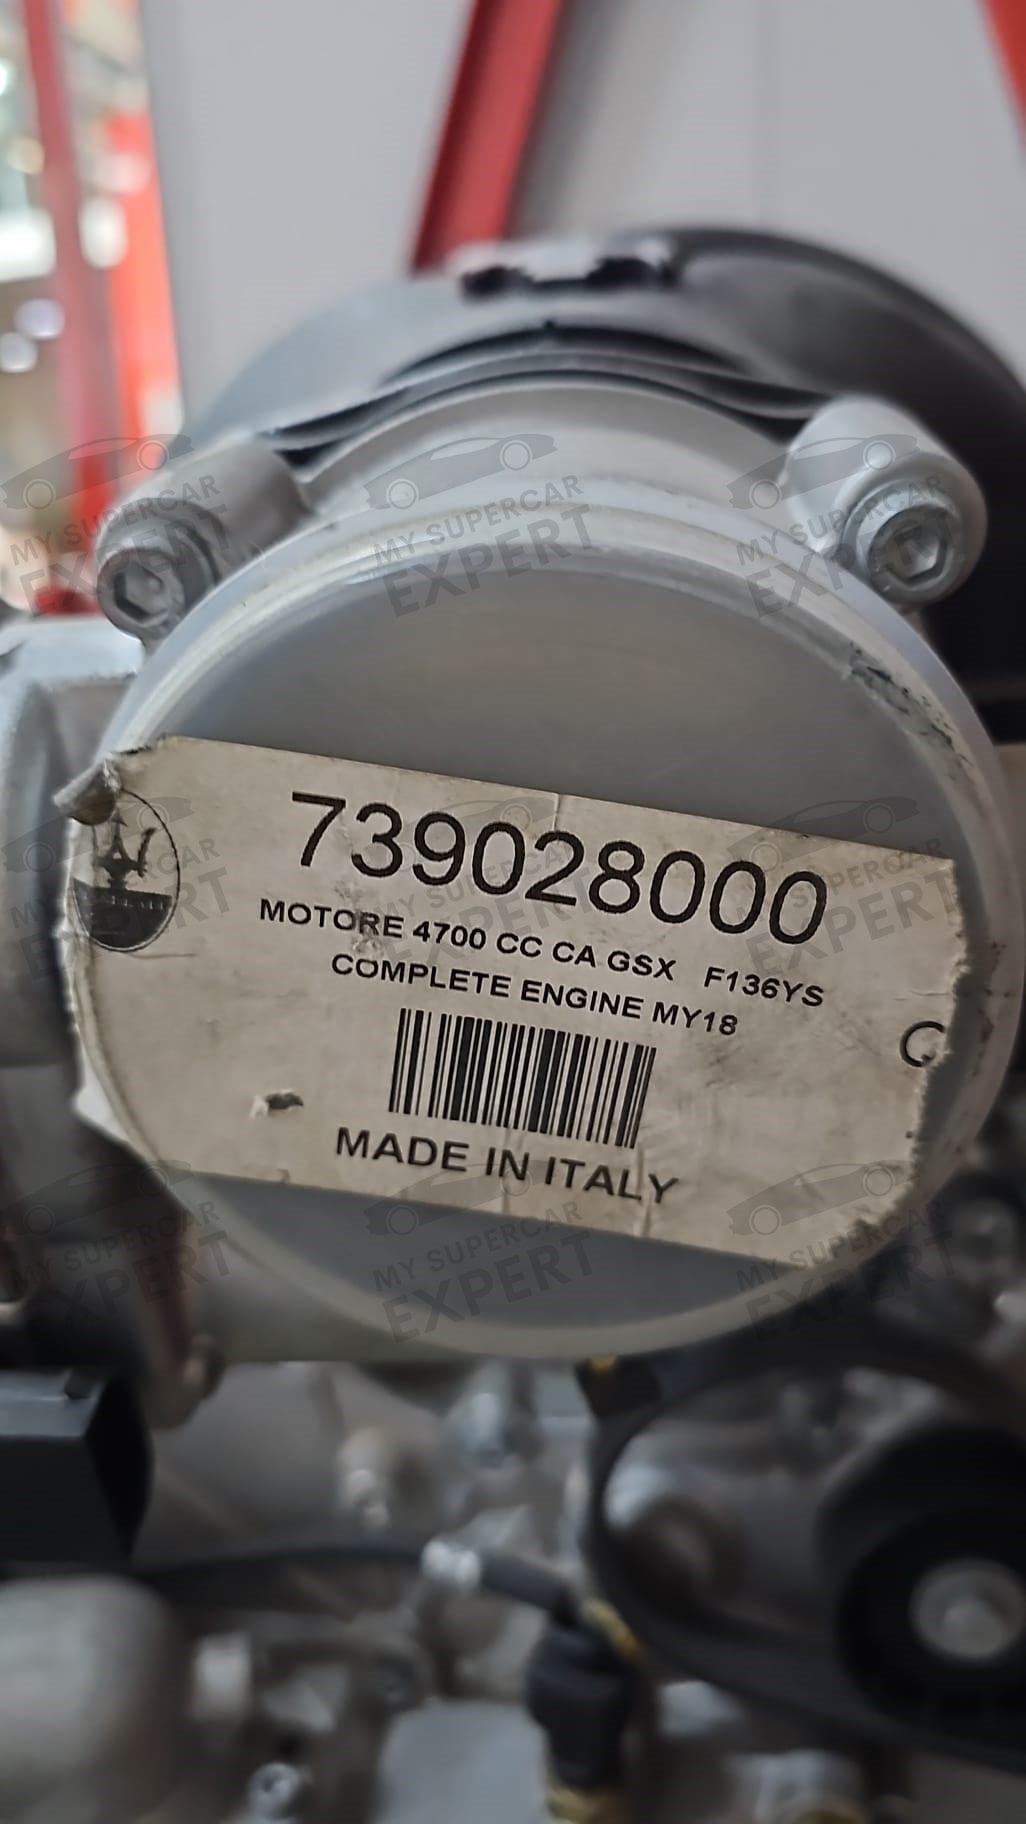 Maserati Granturismo F136YS Conjunto de motor V8 completo MY2018 739028000 Nuevo nunca usado